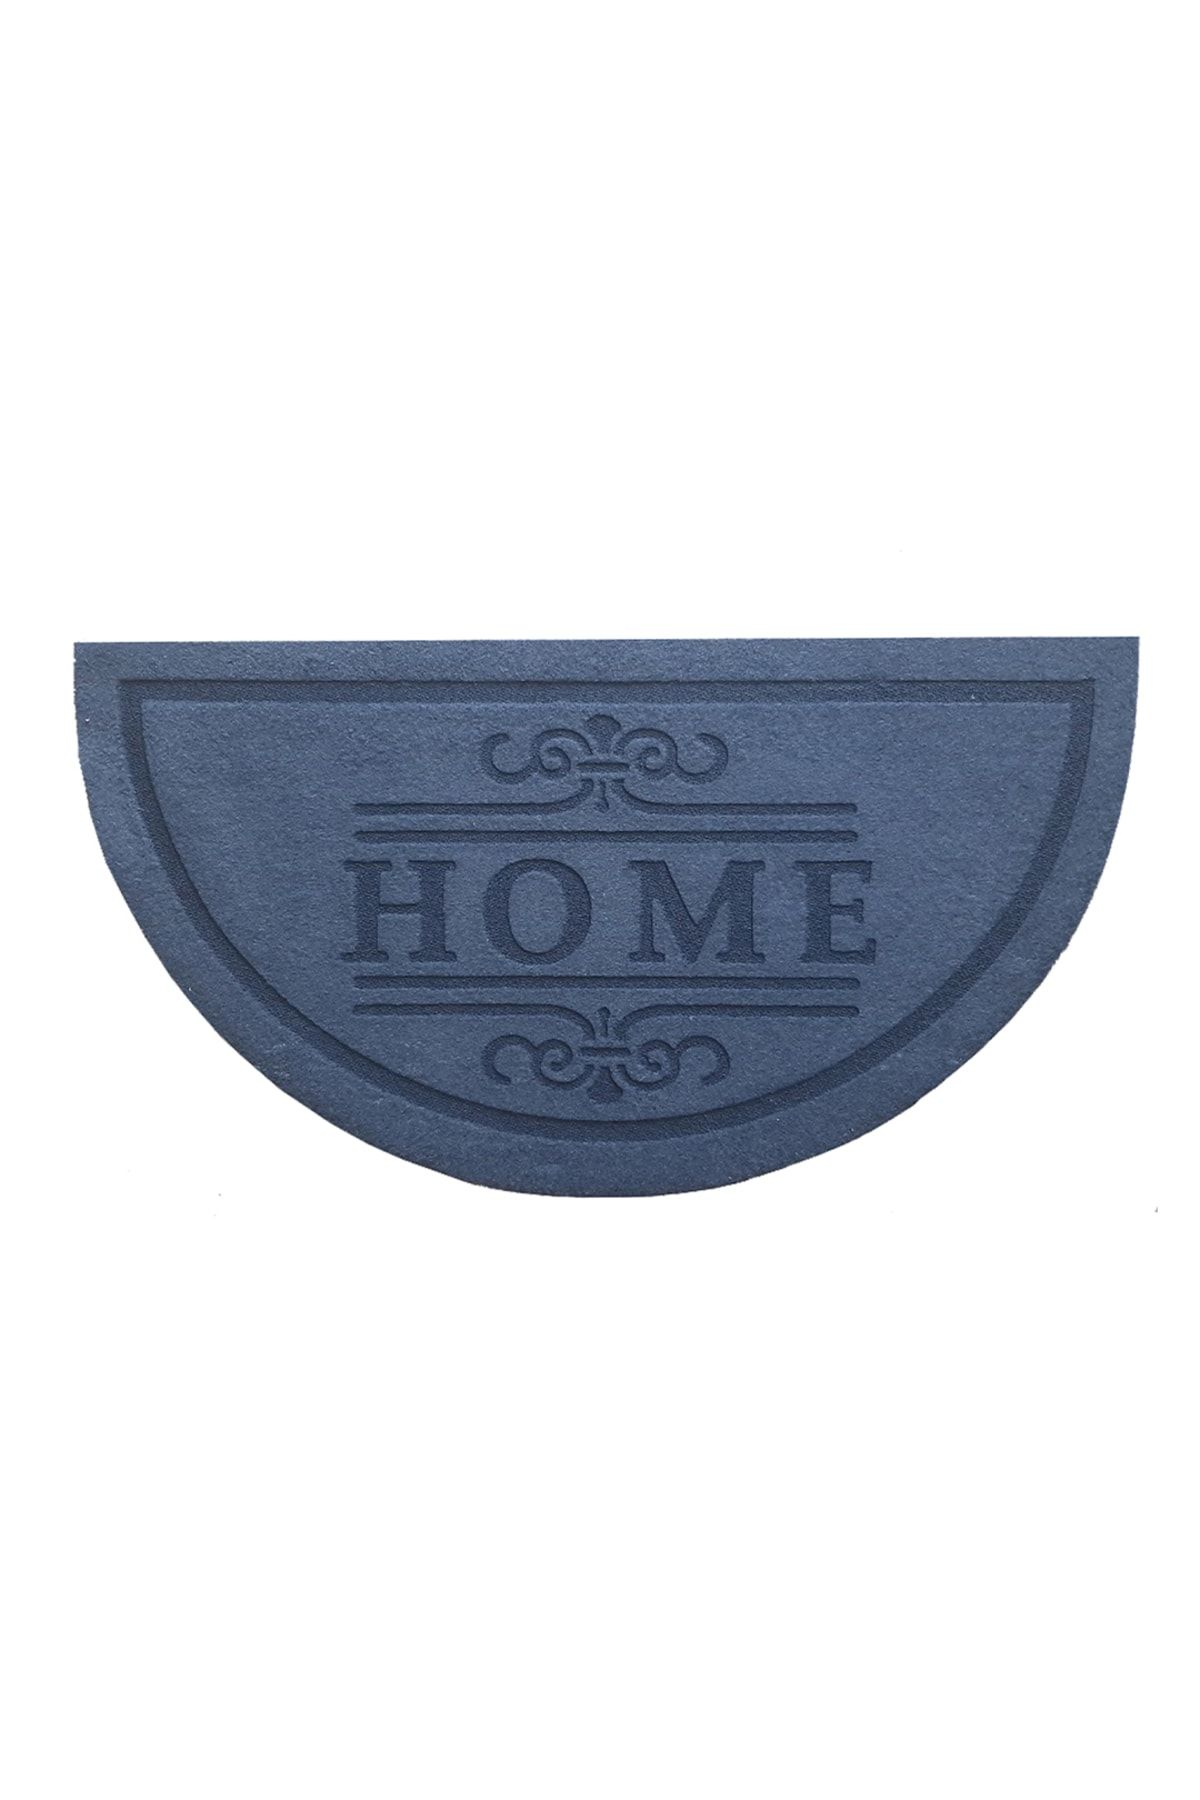 Giz Home Giz Home Parga Yarımay Kapı Önü Paspası - Mavi - 40x 75